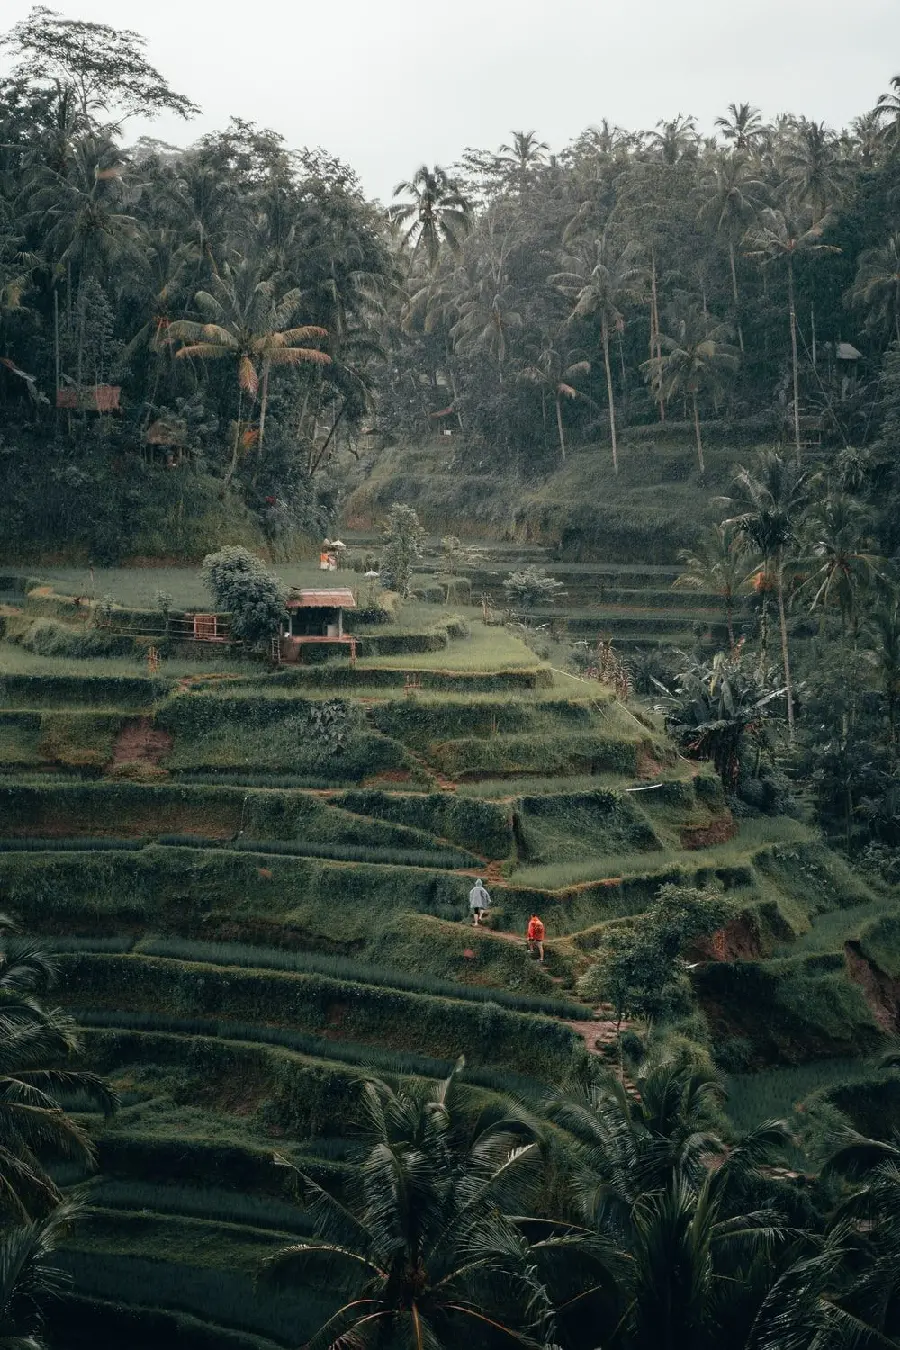 بک گراند سبز پوشش گیاهی در طبیعت استوایی بالی اندونزی